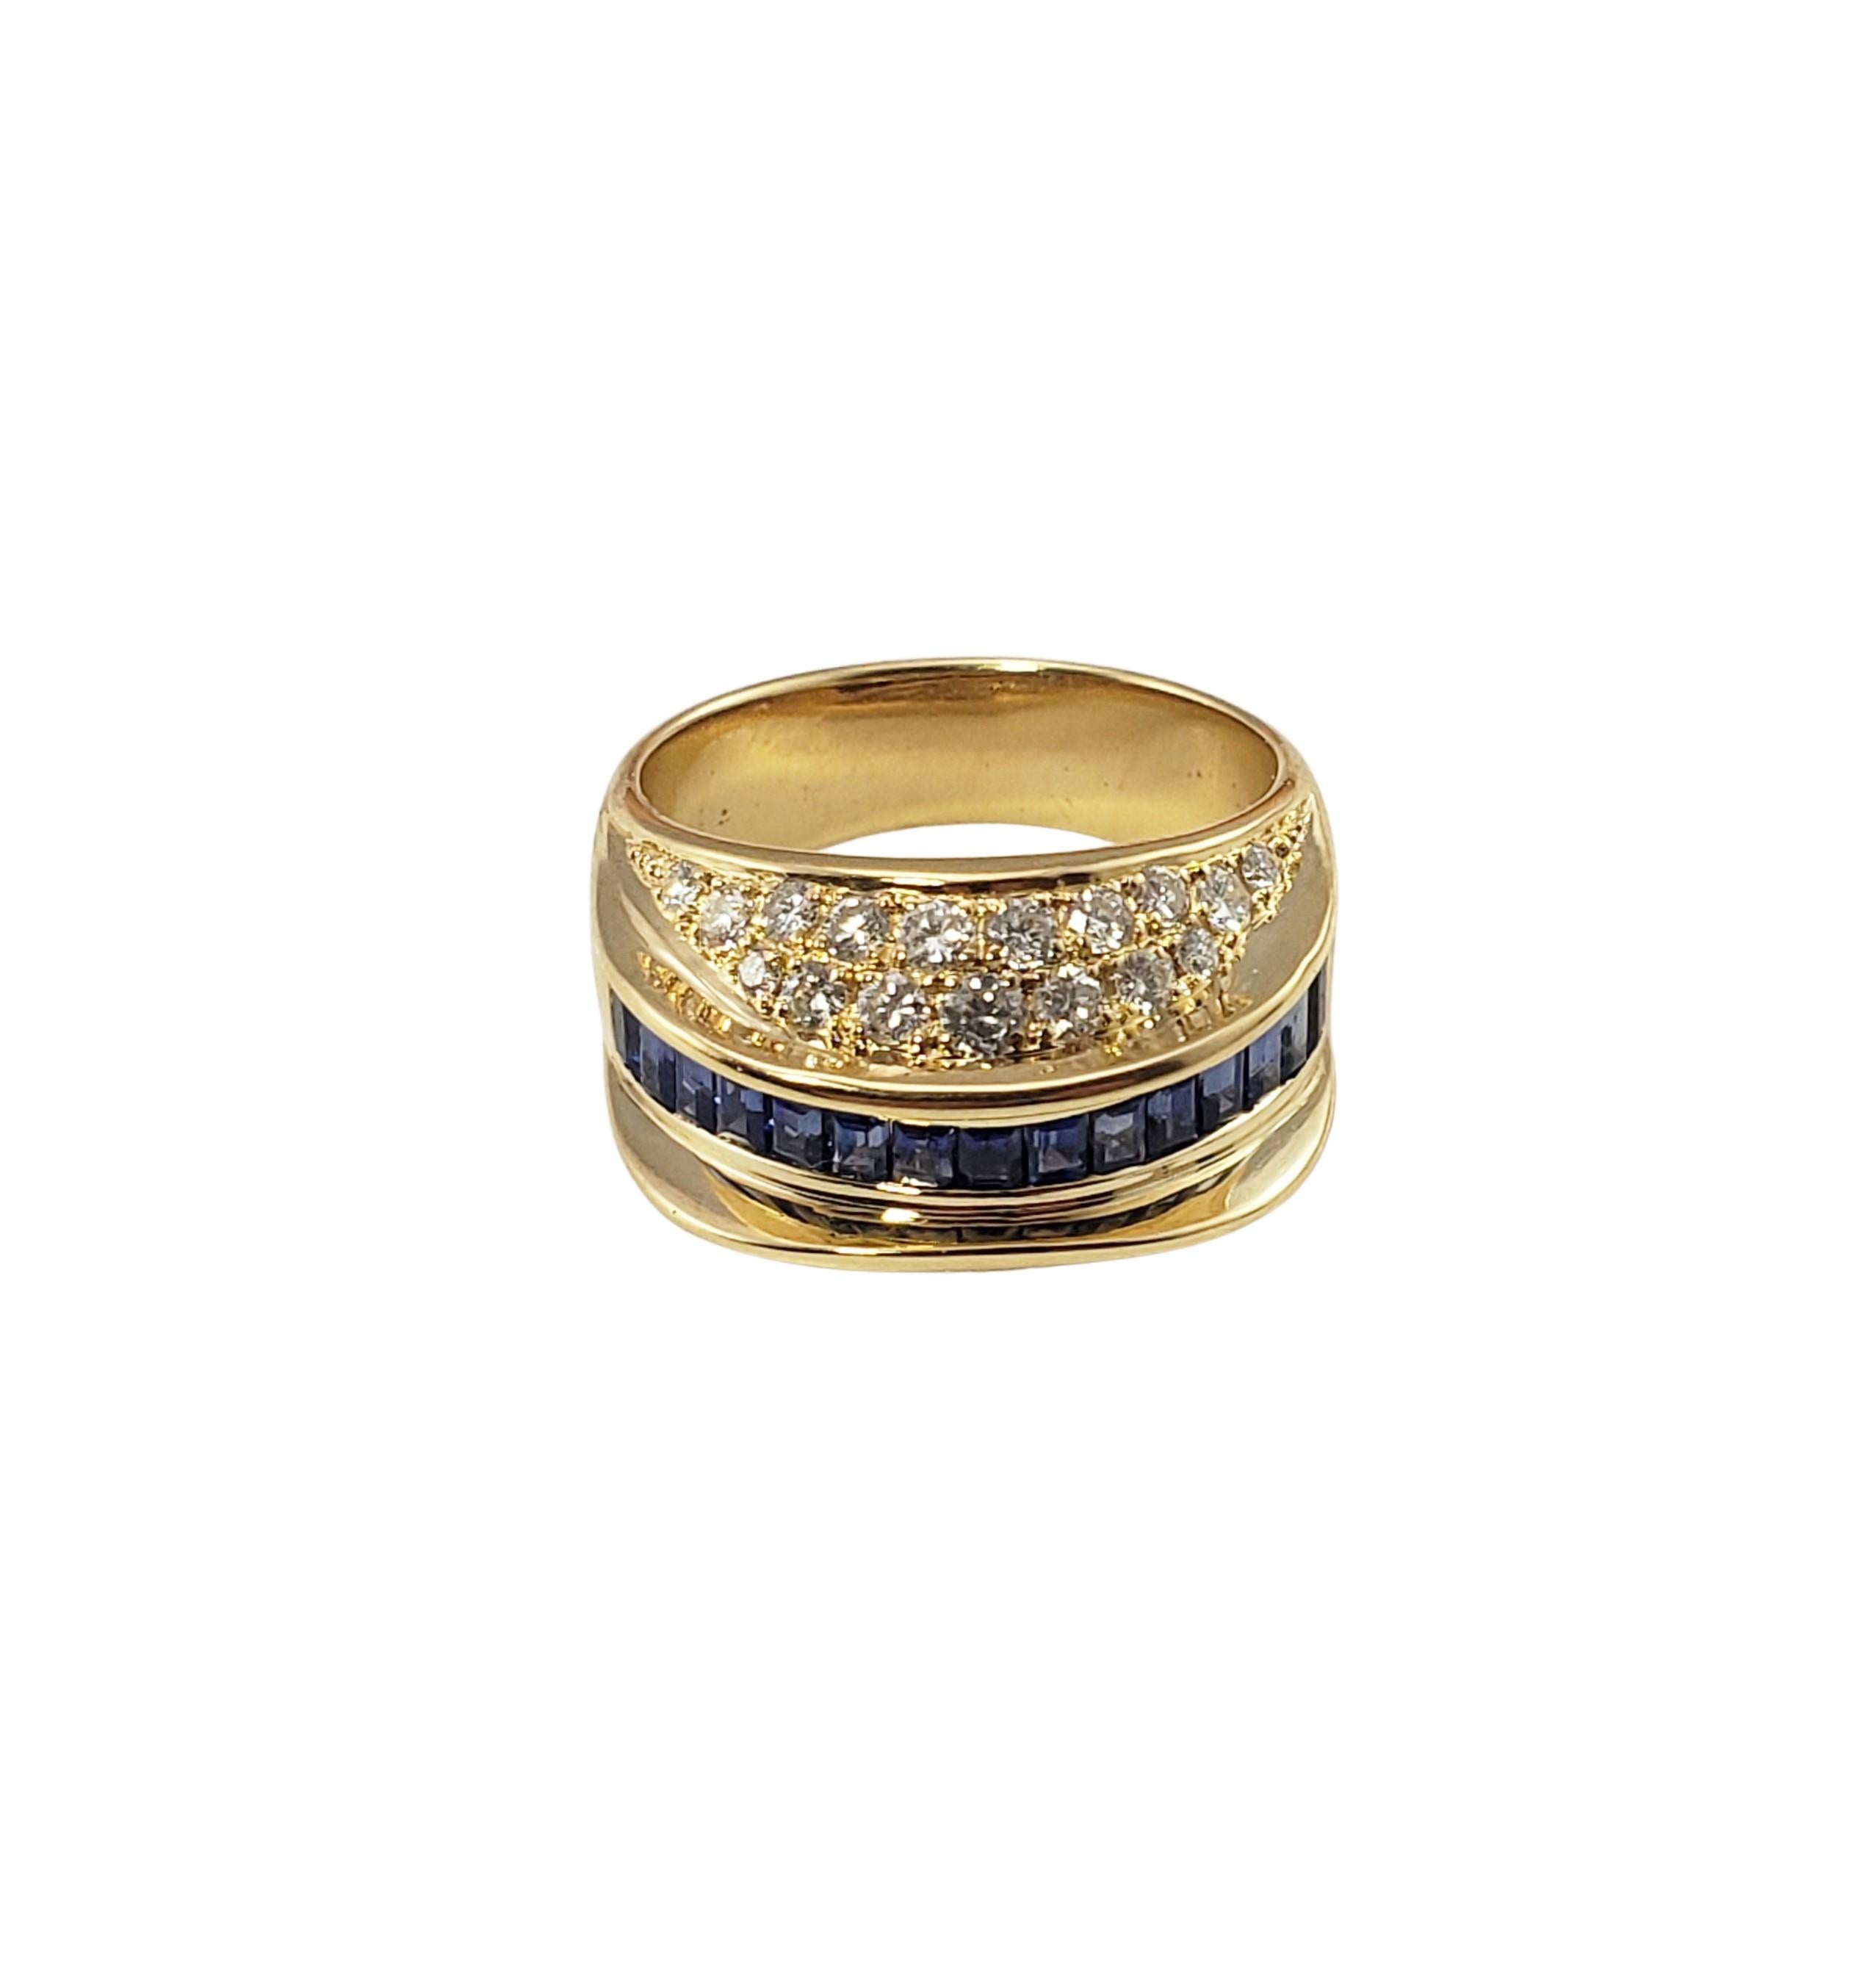 18 Karat Gelbgold Saphir und Diamant Ring Größe 6,75 GAI zertifiziert-

Dieser atemberaubende Ring besteht aus Saphiren im Baguetteschliff und runden Diamanten im Brillantschliff, gefasst in wunderschön detailliertem 18-karätigem Gelbgold.  Breite: 